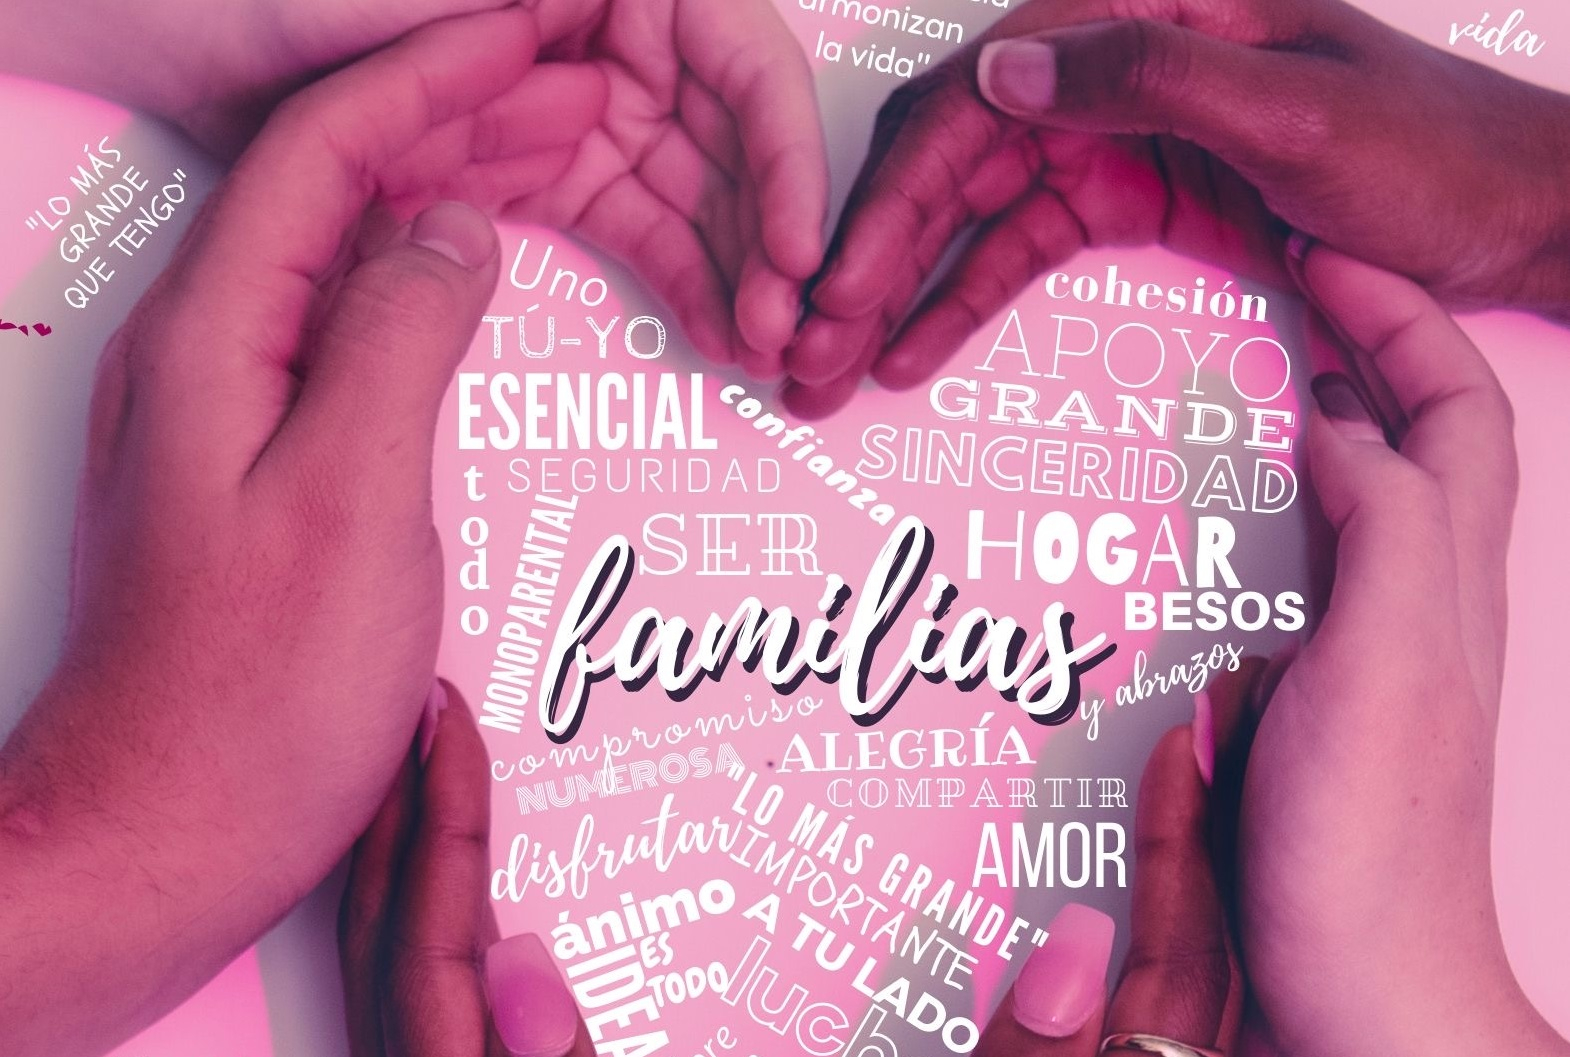 La Diputación anima a celebrar el Día de la Familia con varias actividades  virtuales - SoriaNoticias